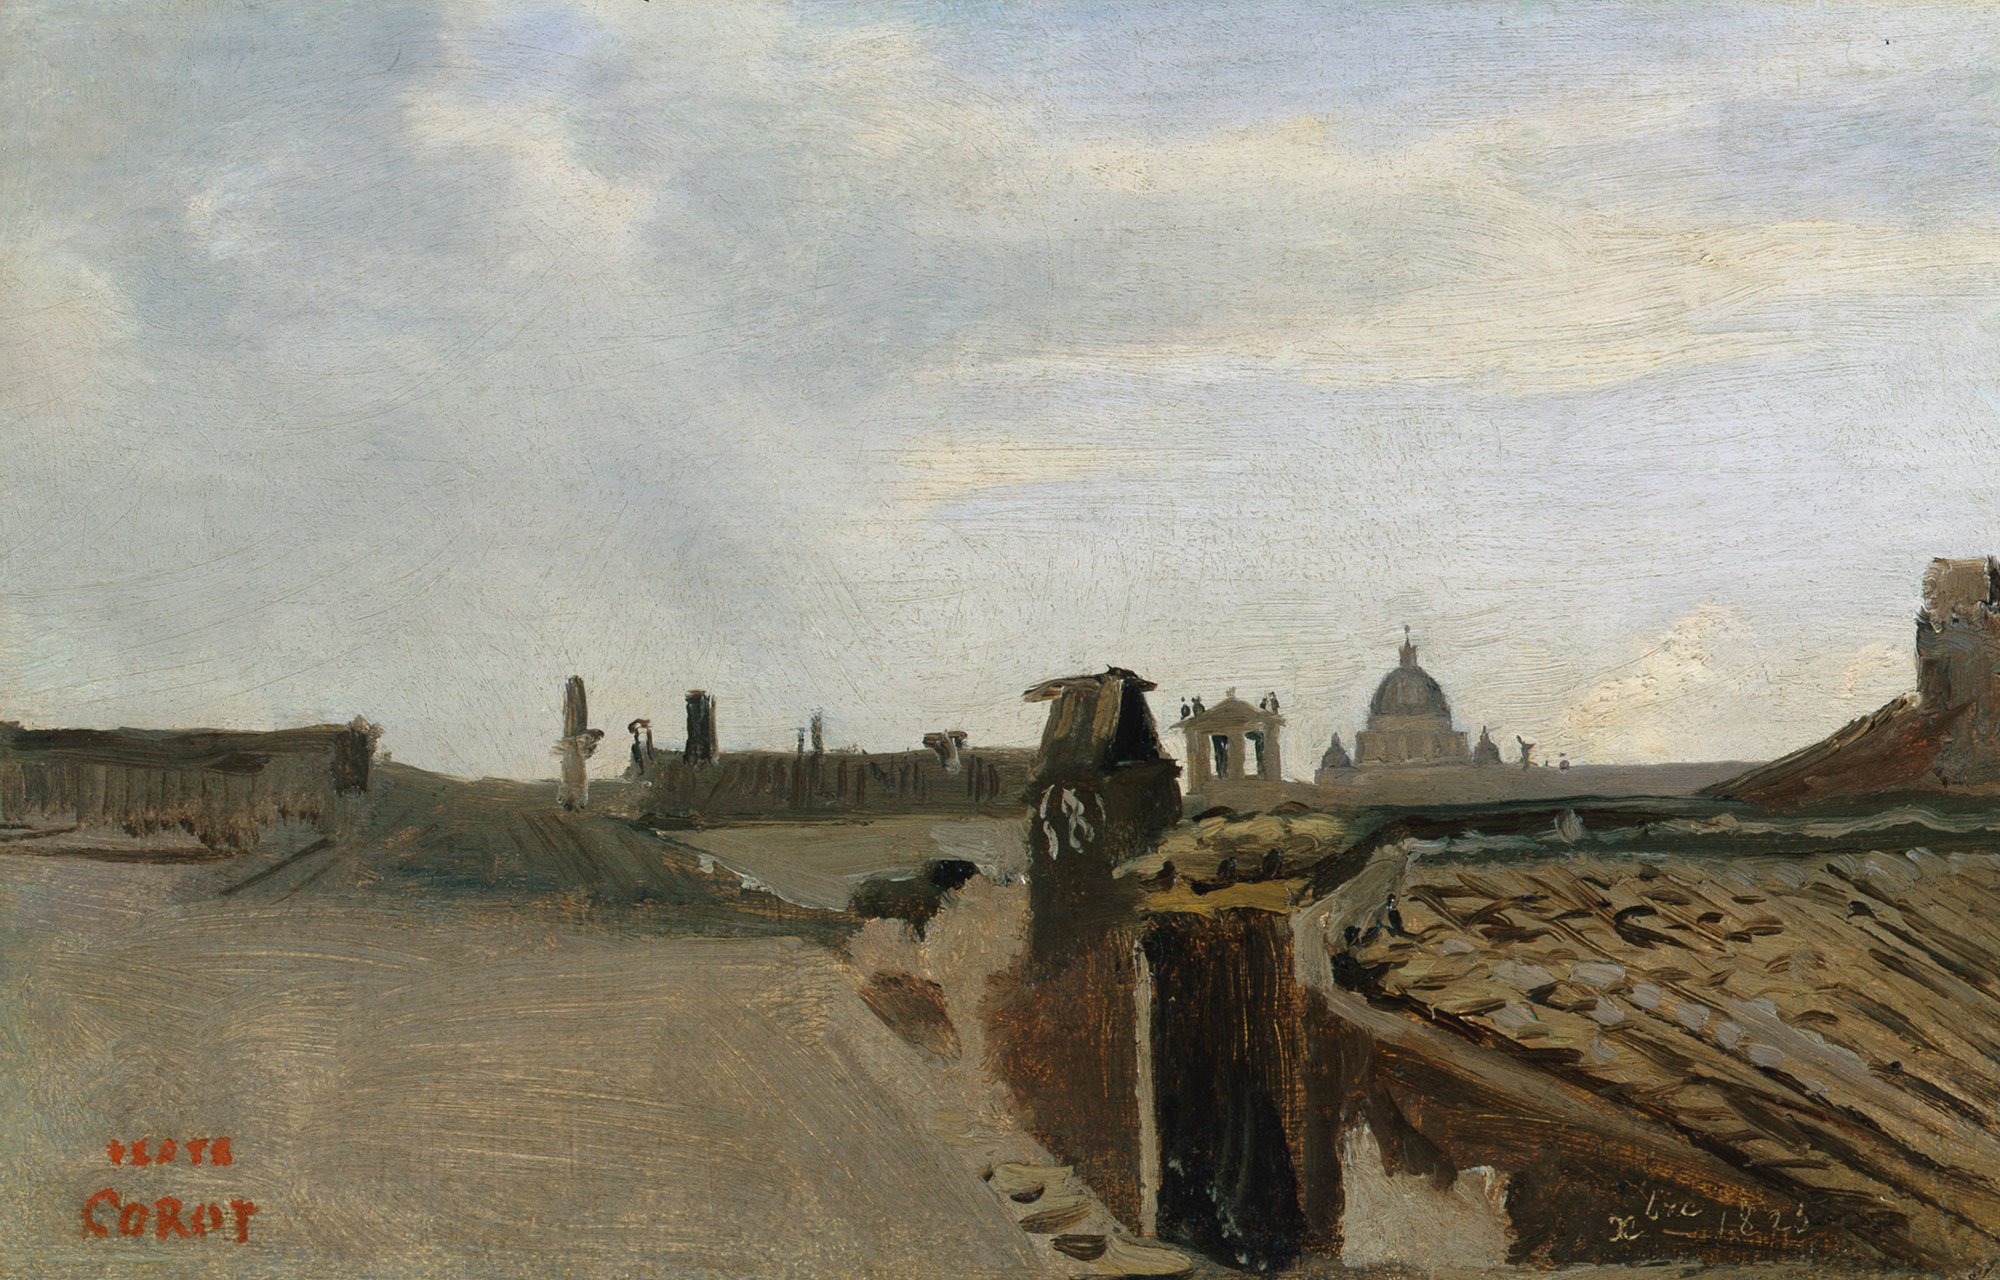 Blick über eine Dachlandschaft. Zusehen sind Kamine und die Kuppel einer großen Kirche. Das Gemälde ist von Camille Corot.